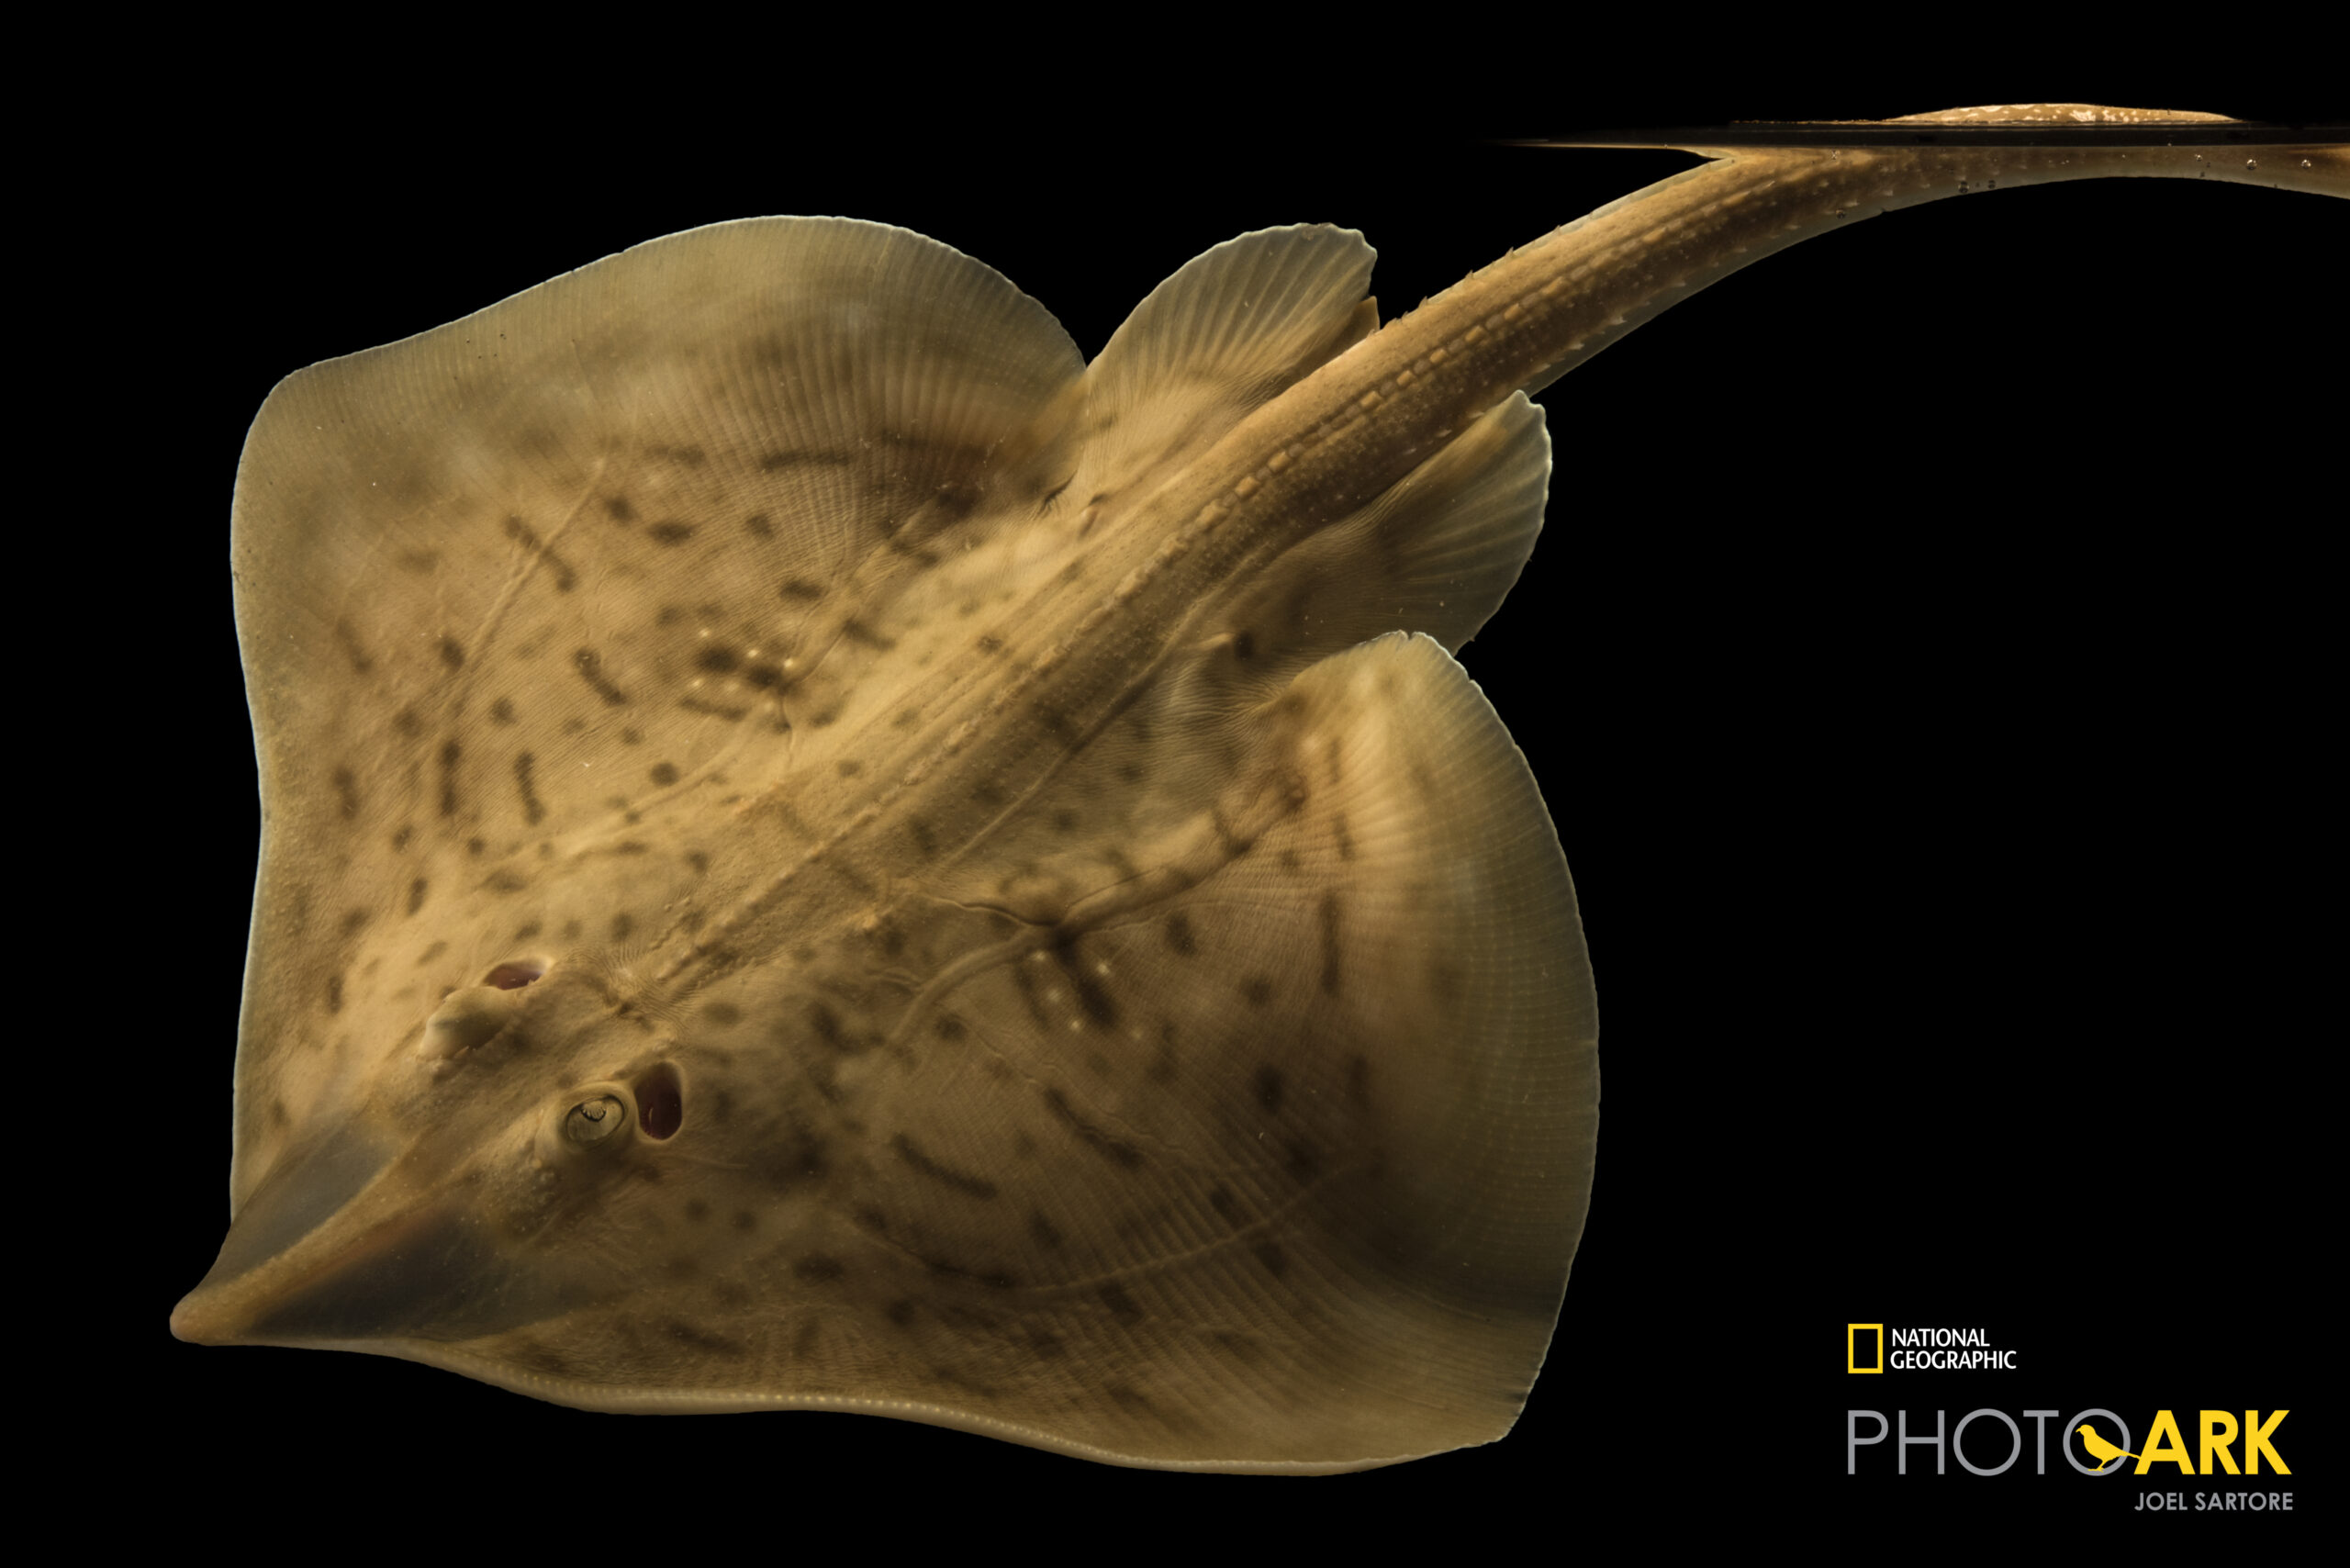 Clearnose skate (Raja eglanteria) from Gulf Specimen Marine Lab and Aquarium.